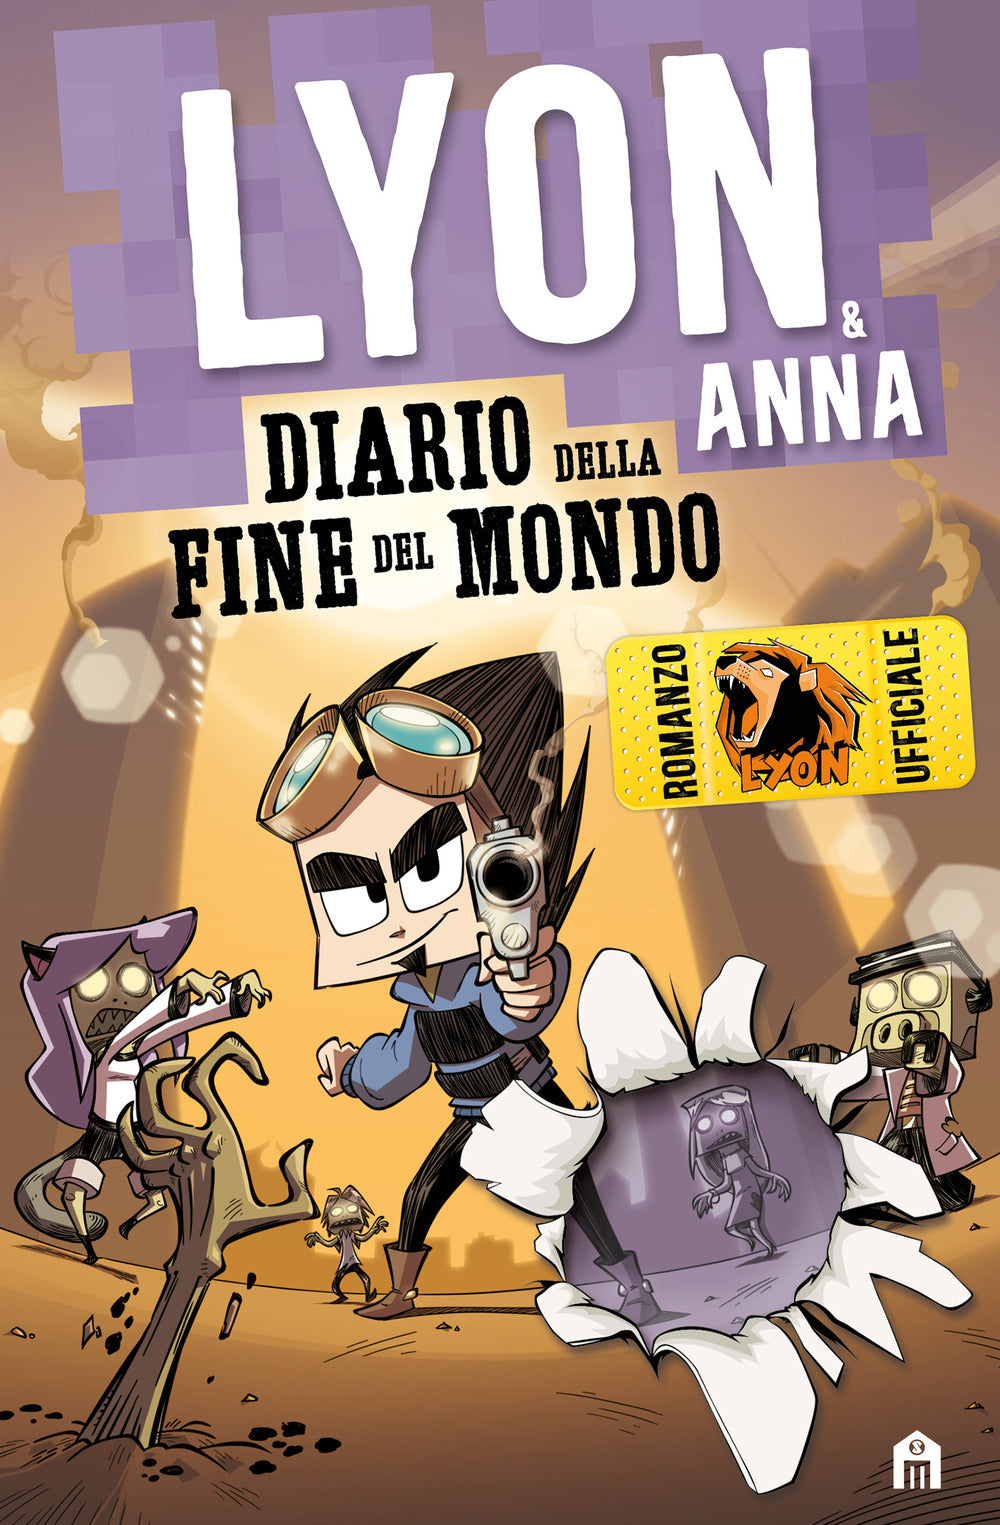 Diario della fine del mondo. Lyon & Anna.